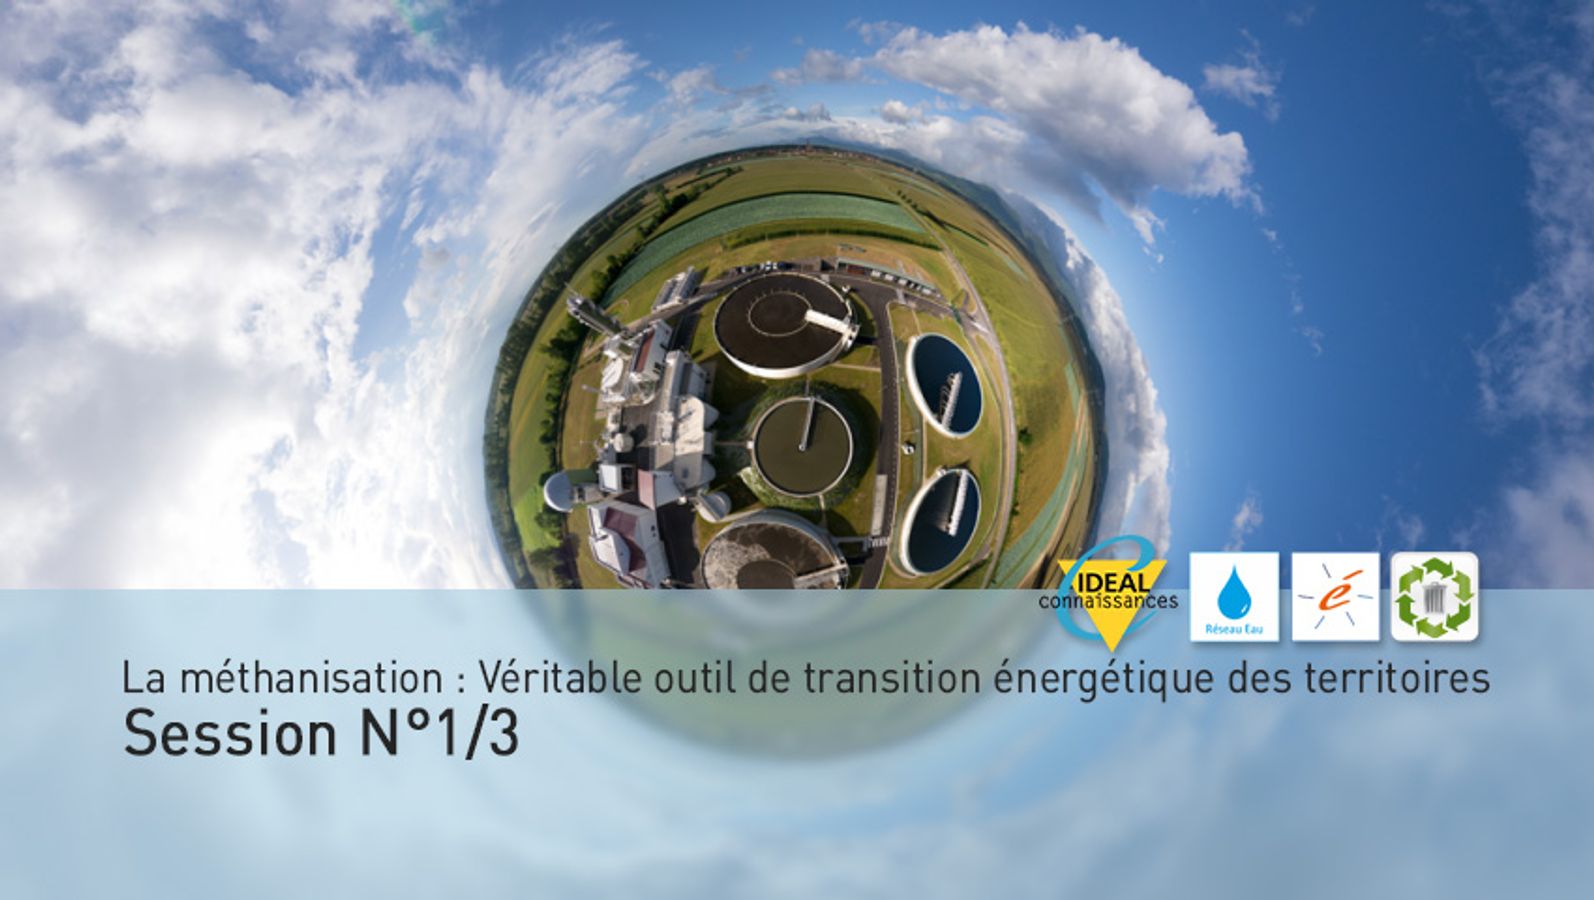 La méthanisation : Véritable outil de transition énergétique des territoires. Session N°1/3